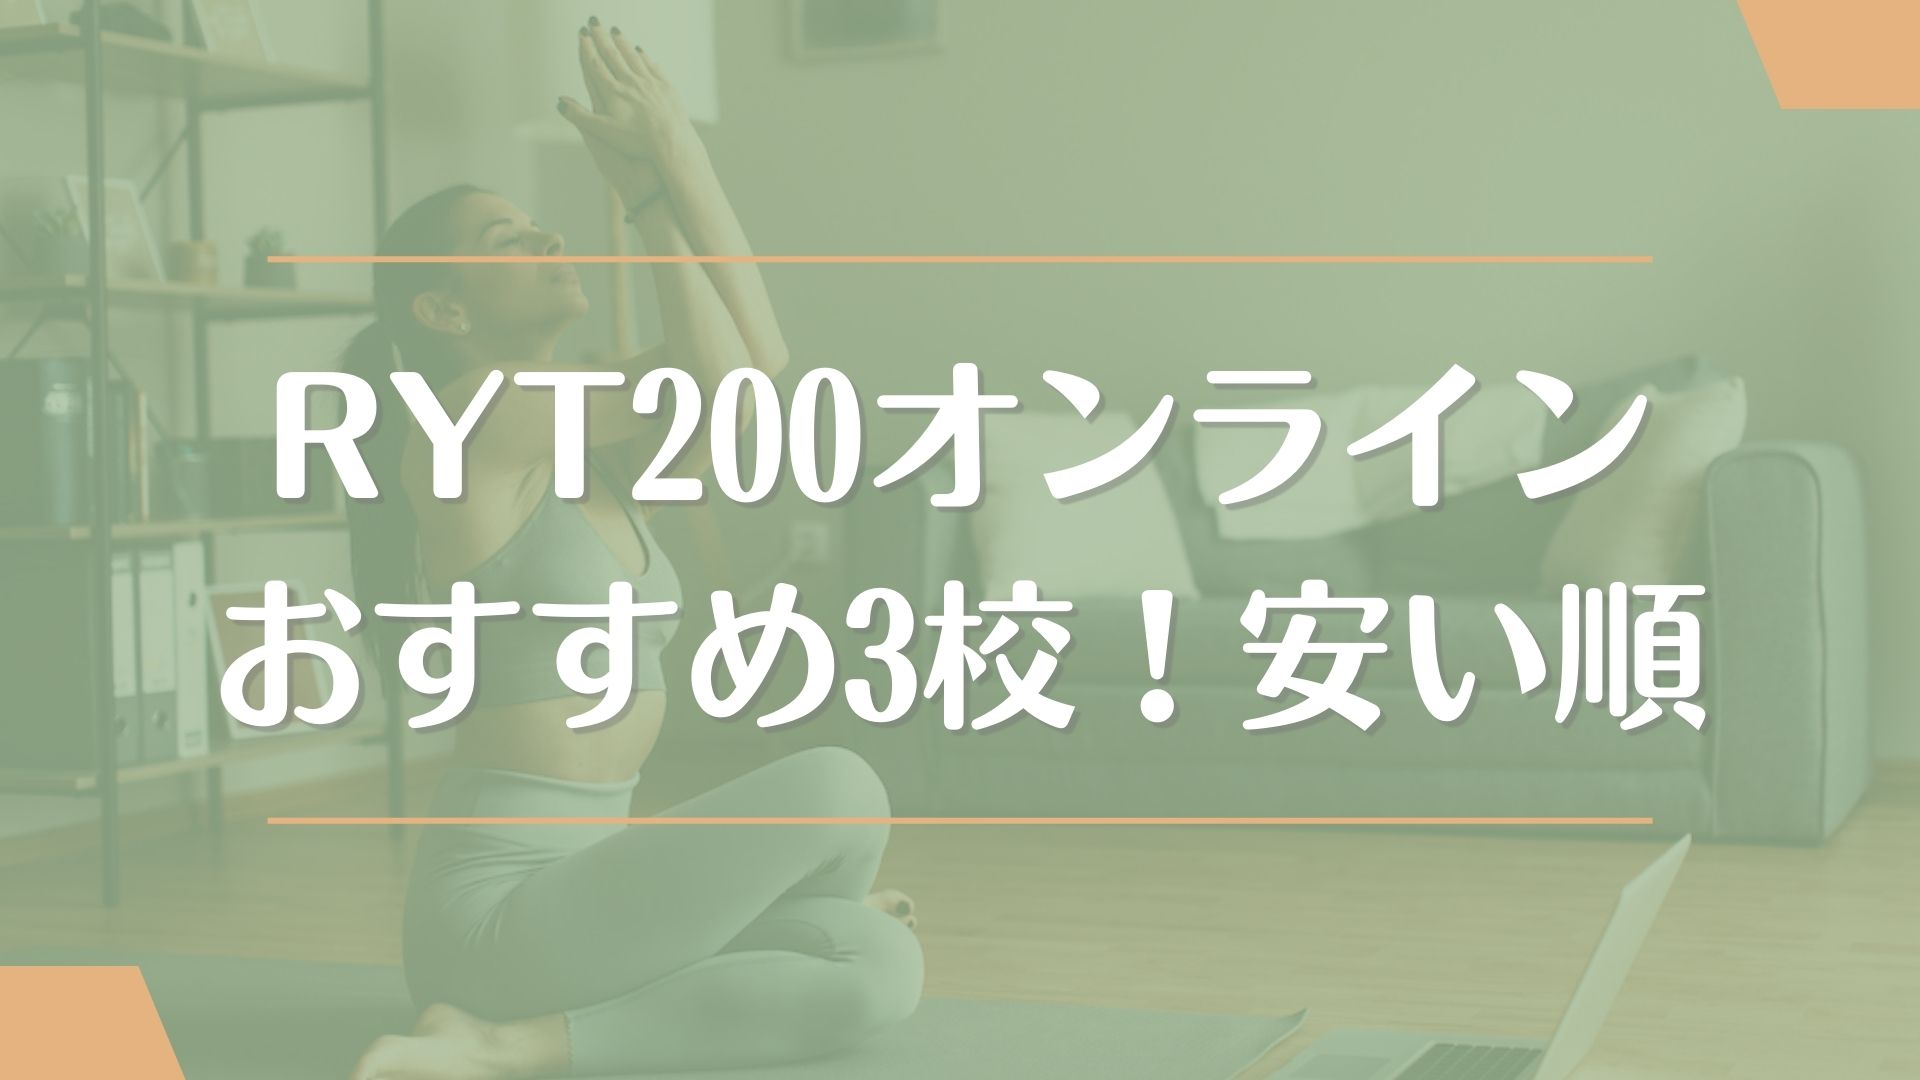 RYT200オンライン通信講座おすすめ3校【安い順】